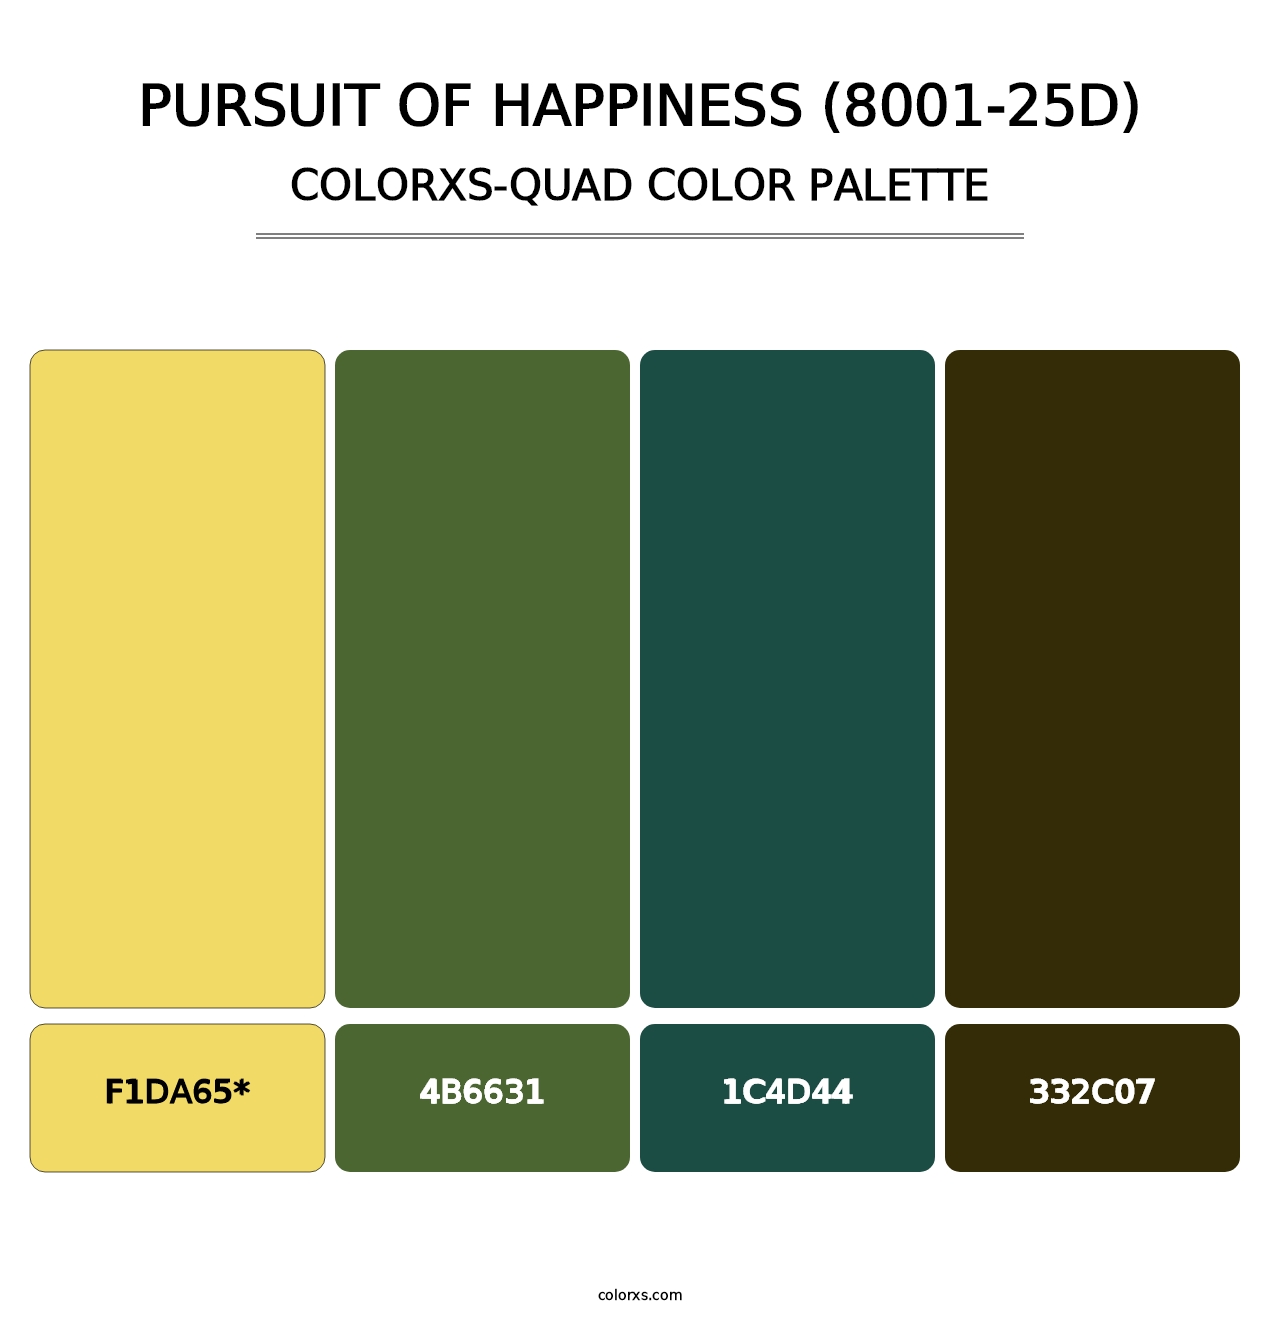 Pursuit of Happiness (8001-25D) - Colorxs Quad Palette